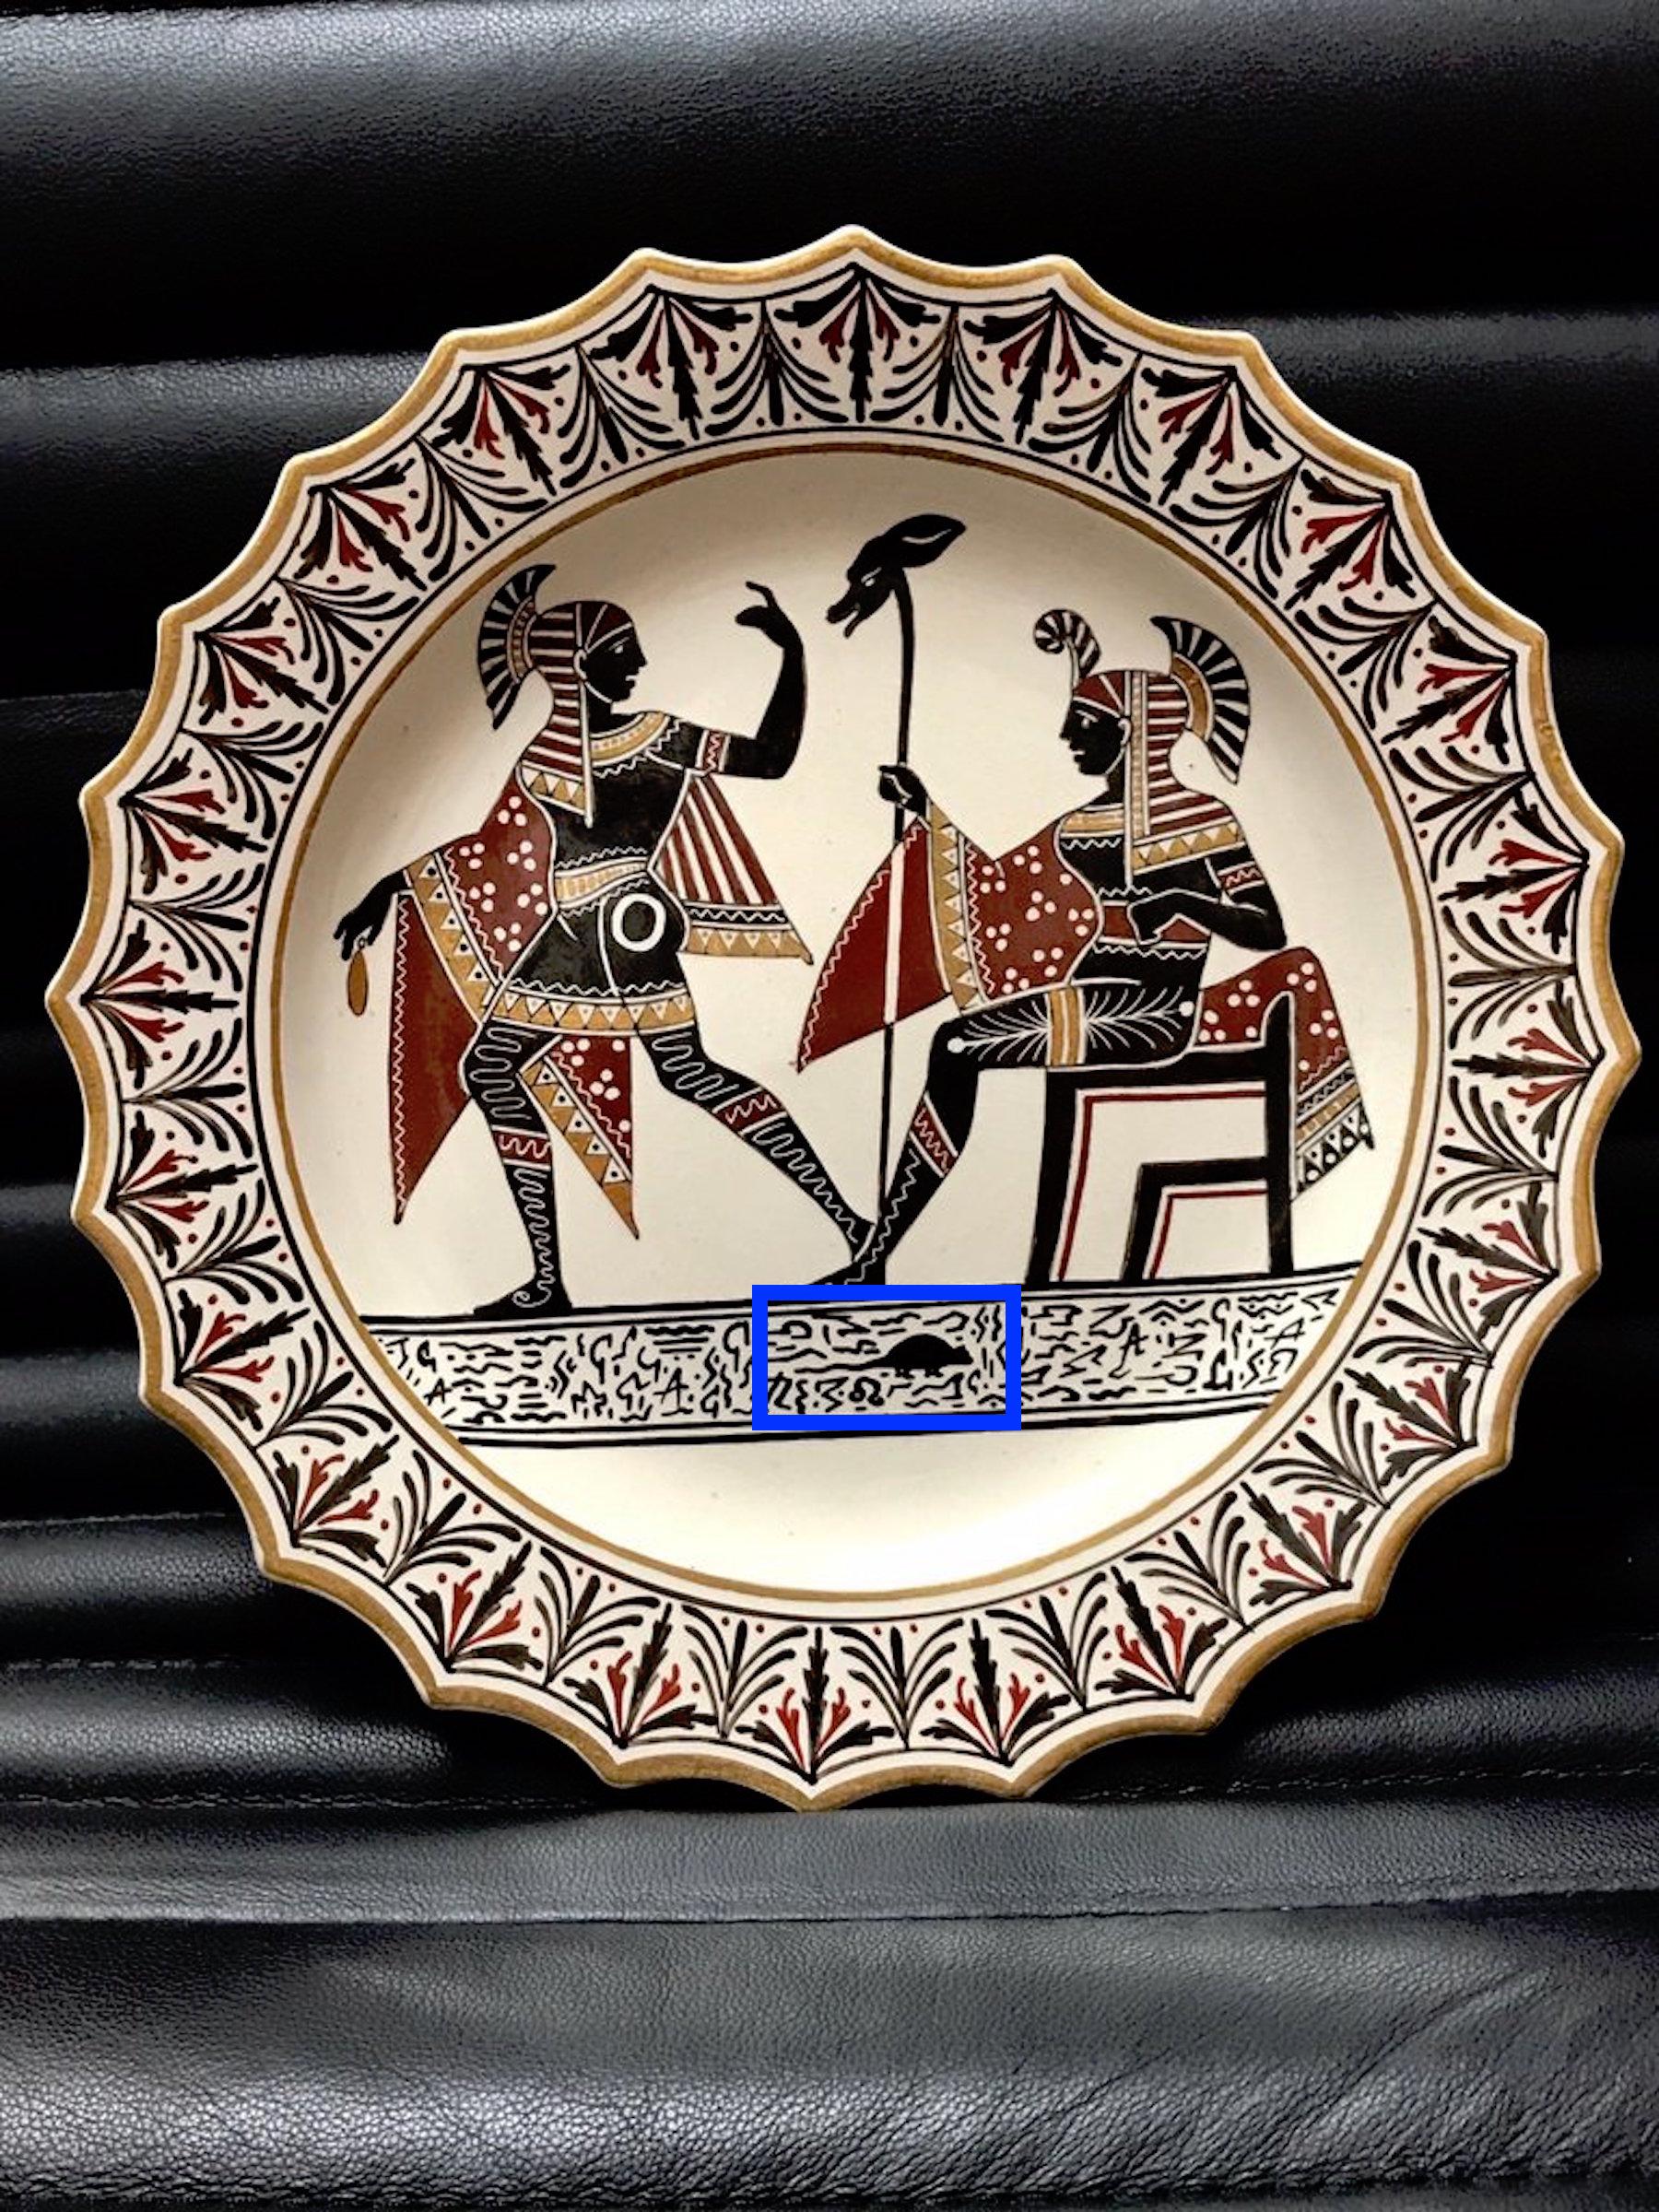 Assiette en poterie Giustiniani Egyptomania avec des reflets dorés et un rongeur central
Fabrication napolitaine (Biagio Giustiniani & Sons) datée de 1830-1840
19e siècle, impressionné par l'écriture Giustiniani et d'autres caractères.
 